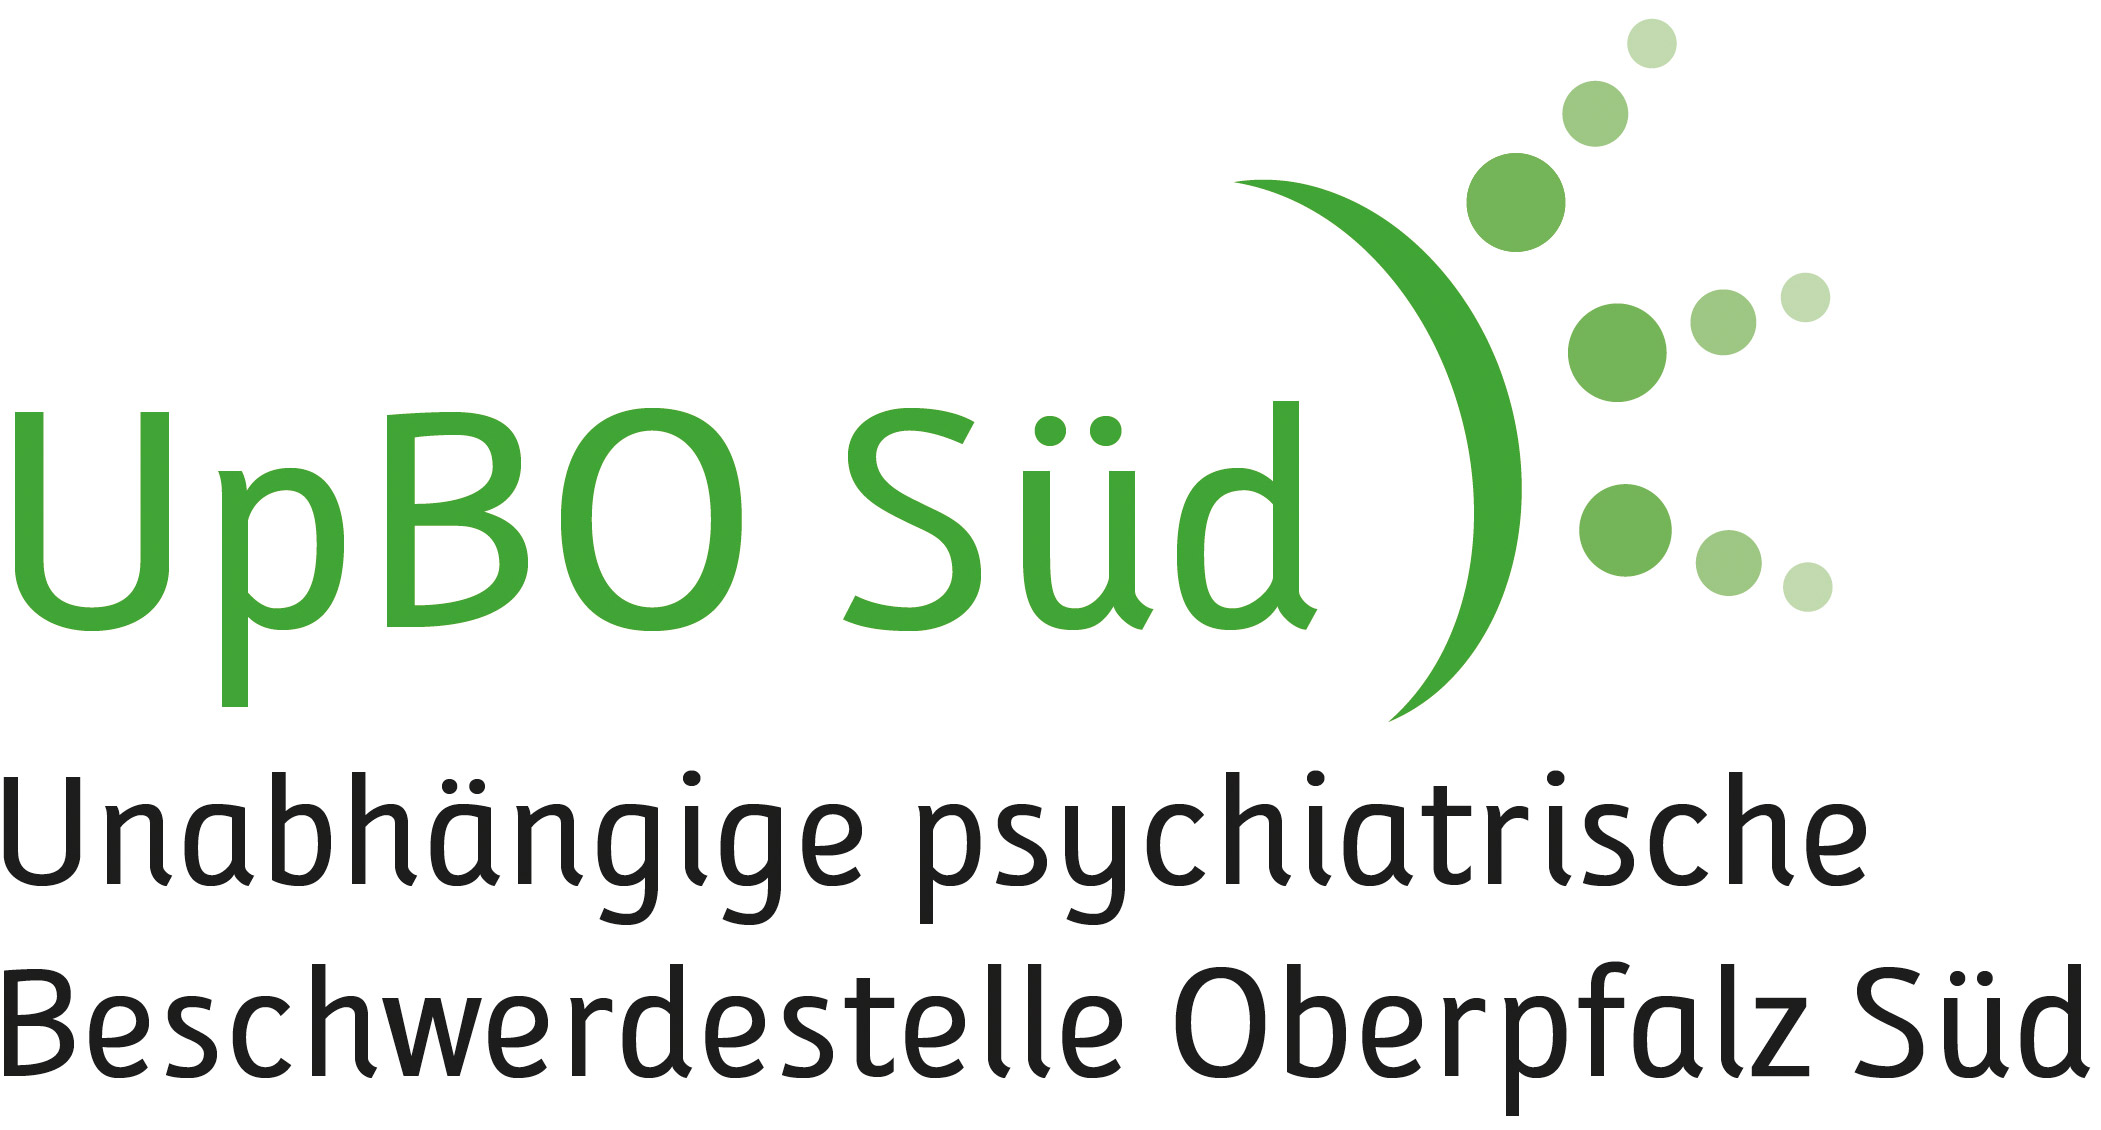 Unabhängige psychiatrische Beschwerdestelle Oberpfalz Süd